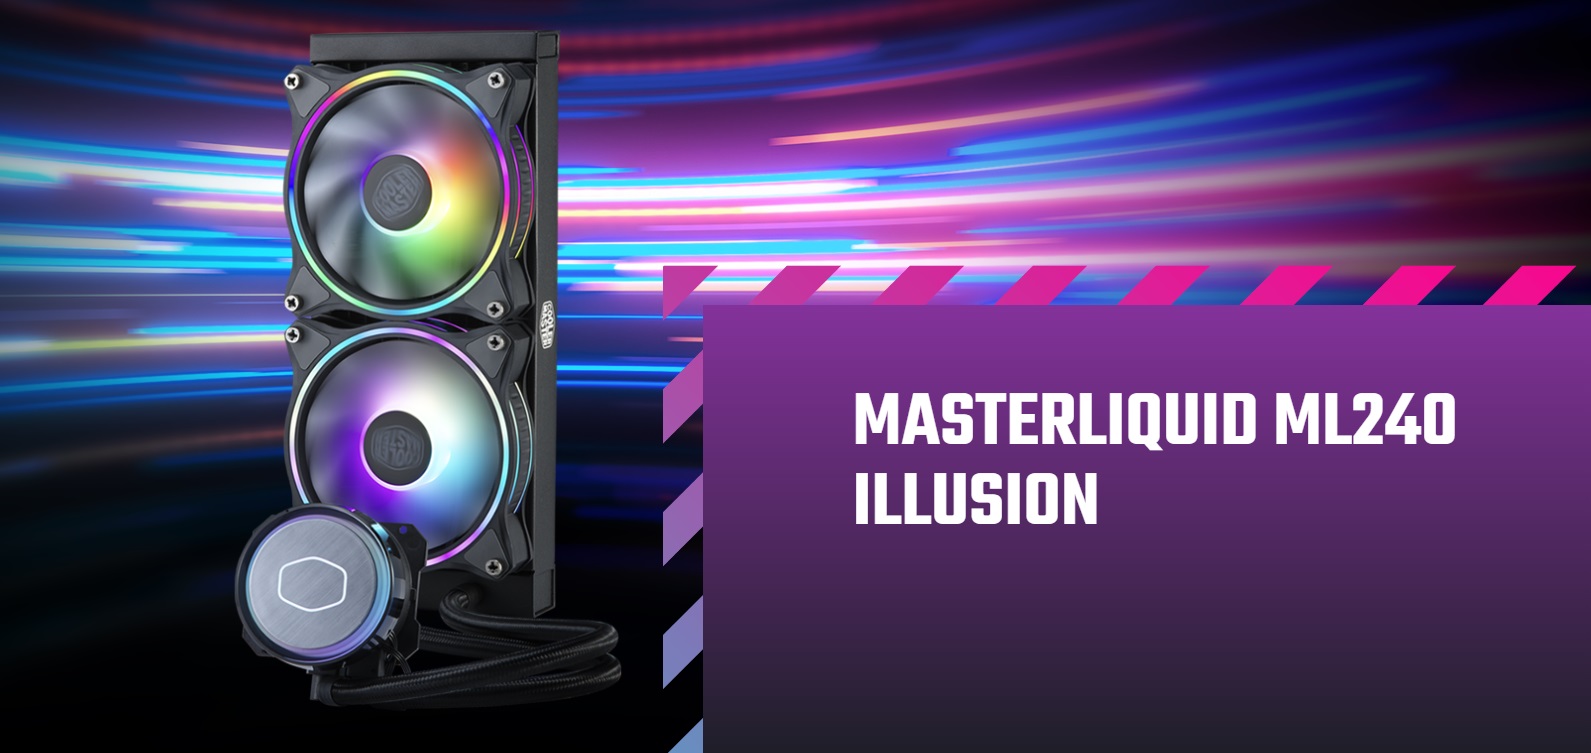 MasterLiquid ML360 Illusion CPU Liquid Cooler